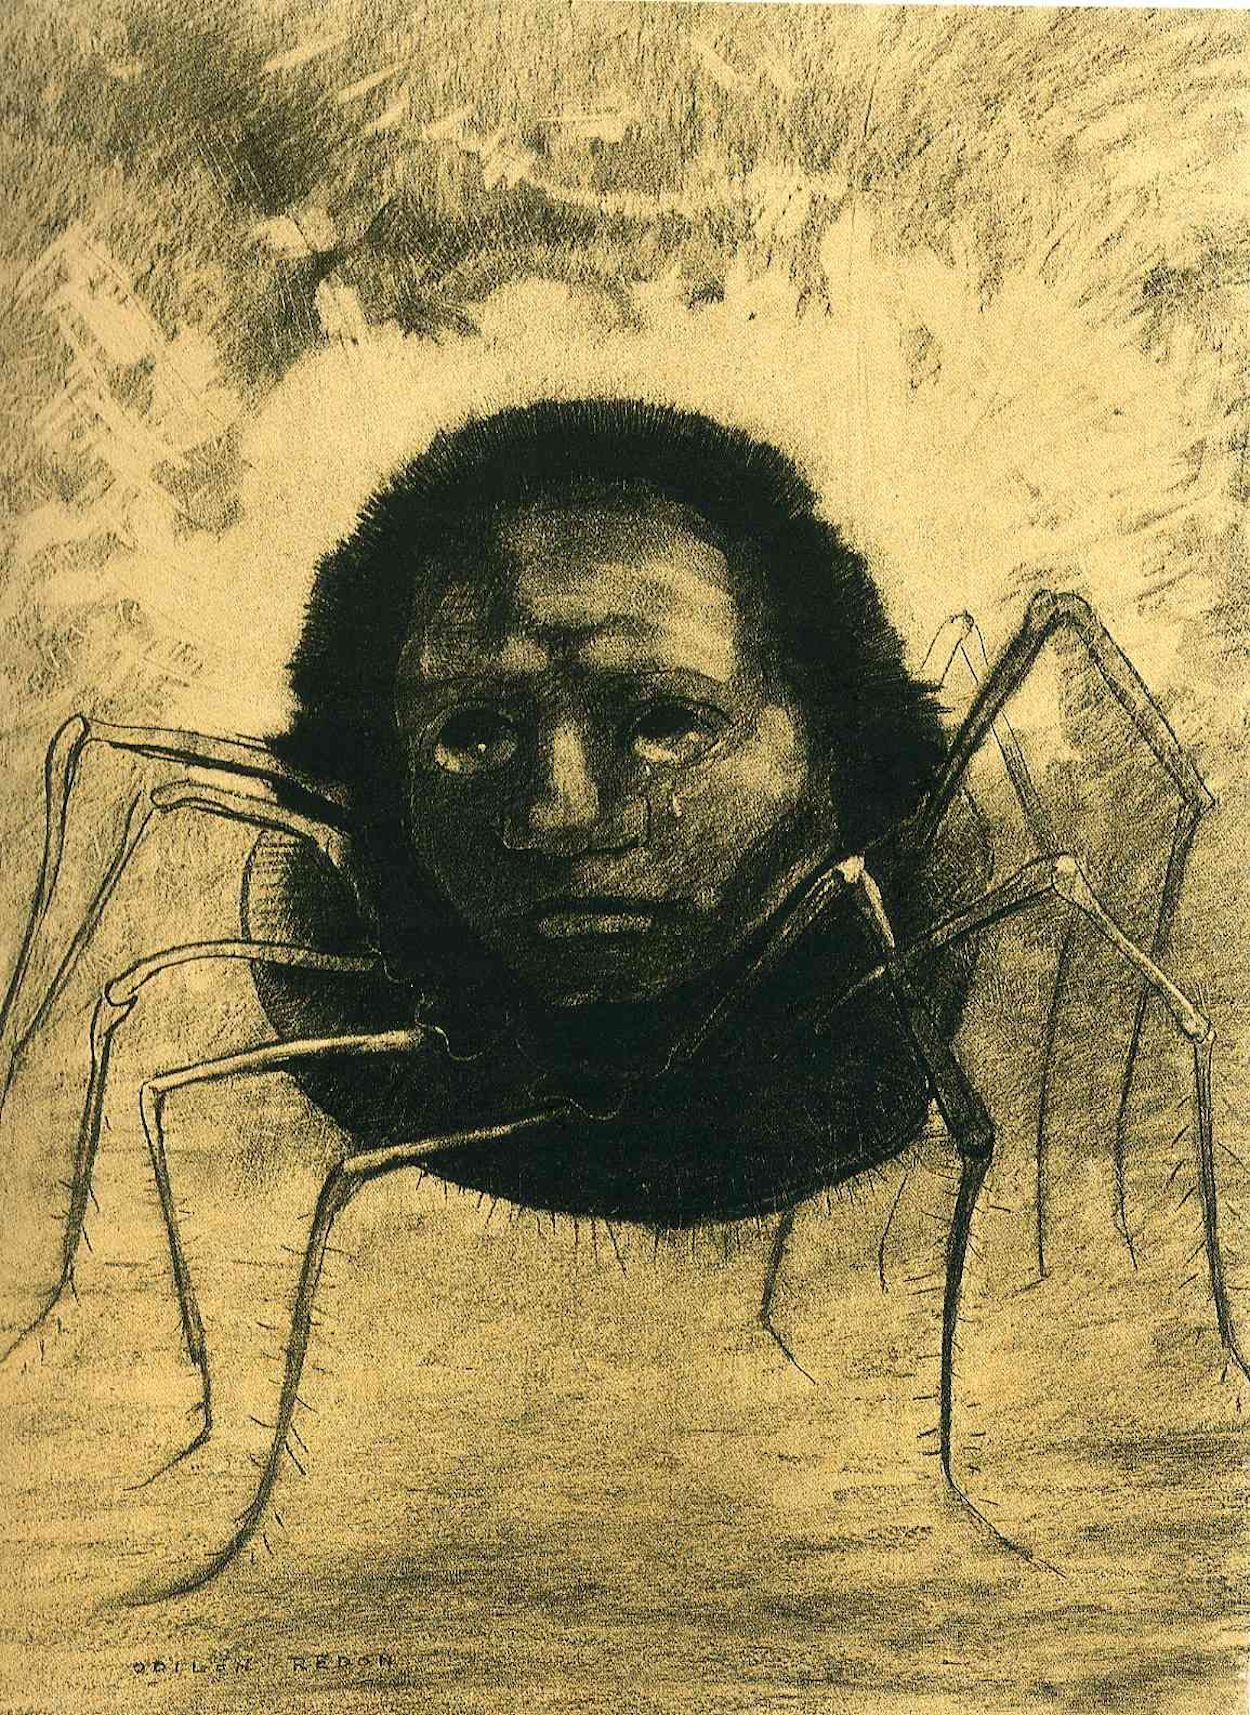 De huilende spin by Odilon Redon - 1881 - 49 x 32.5 cm 